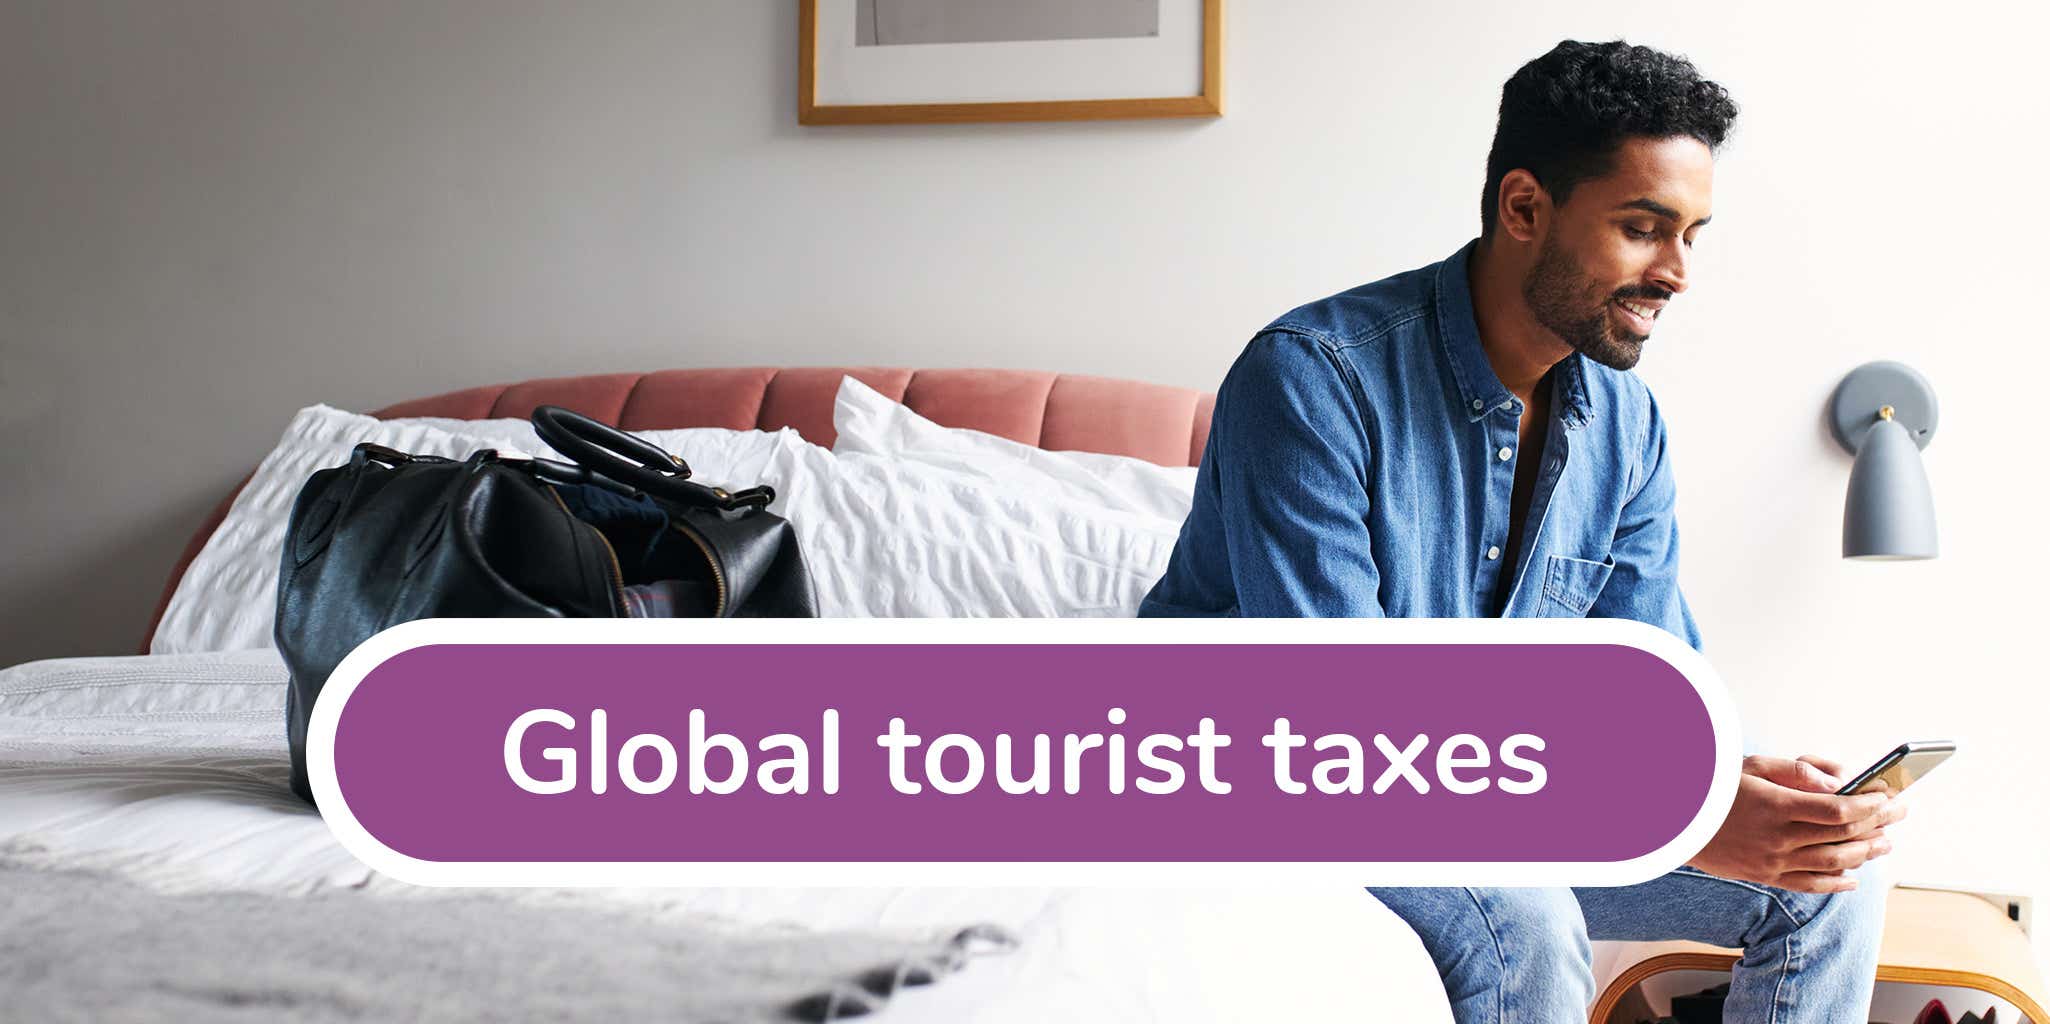 city tax vs tourist tax